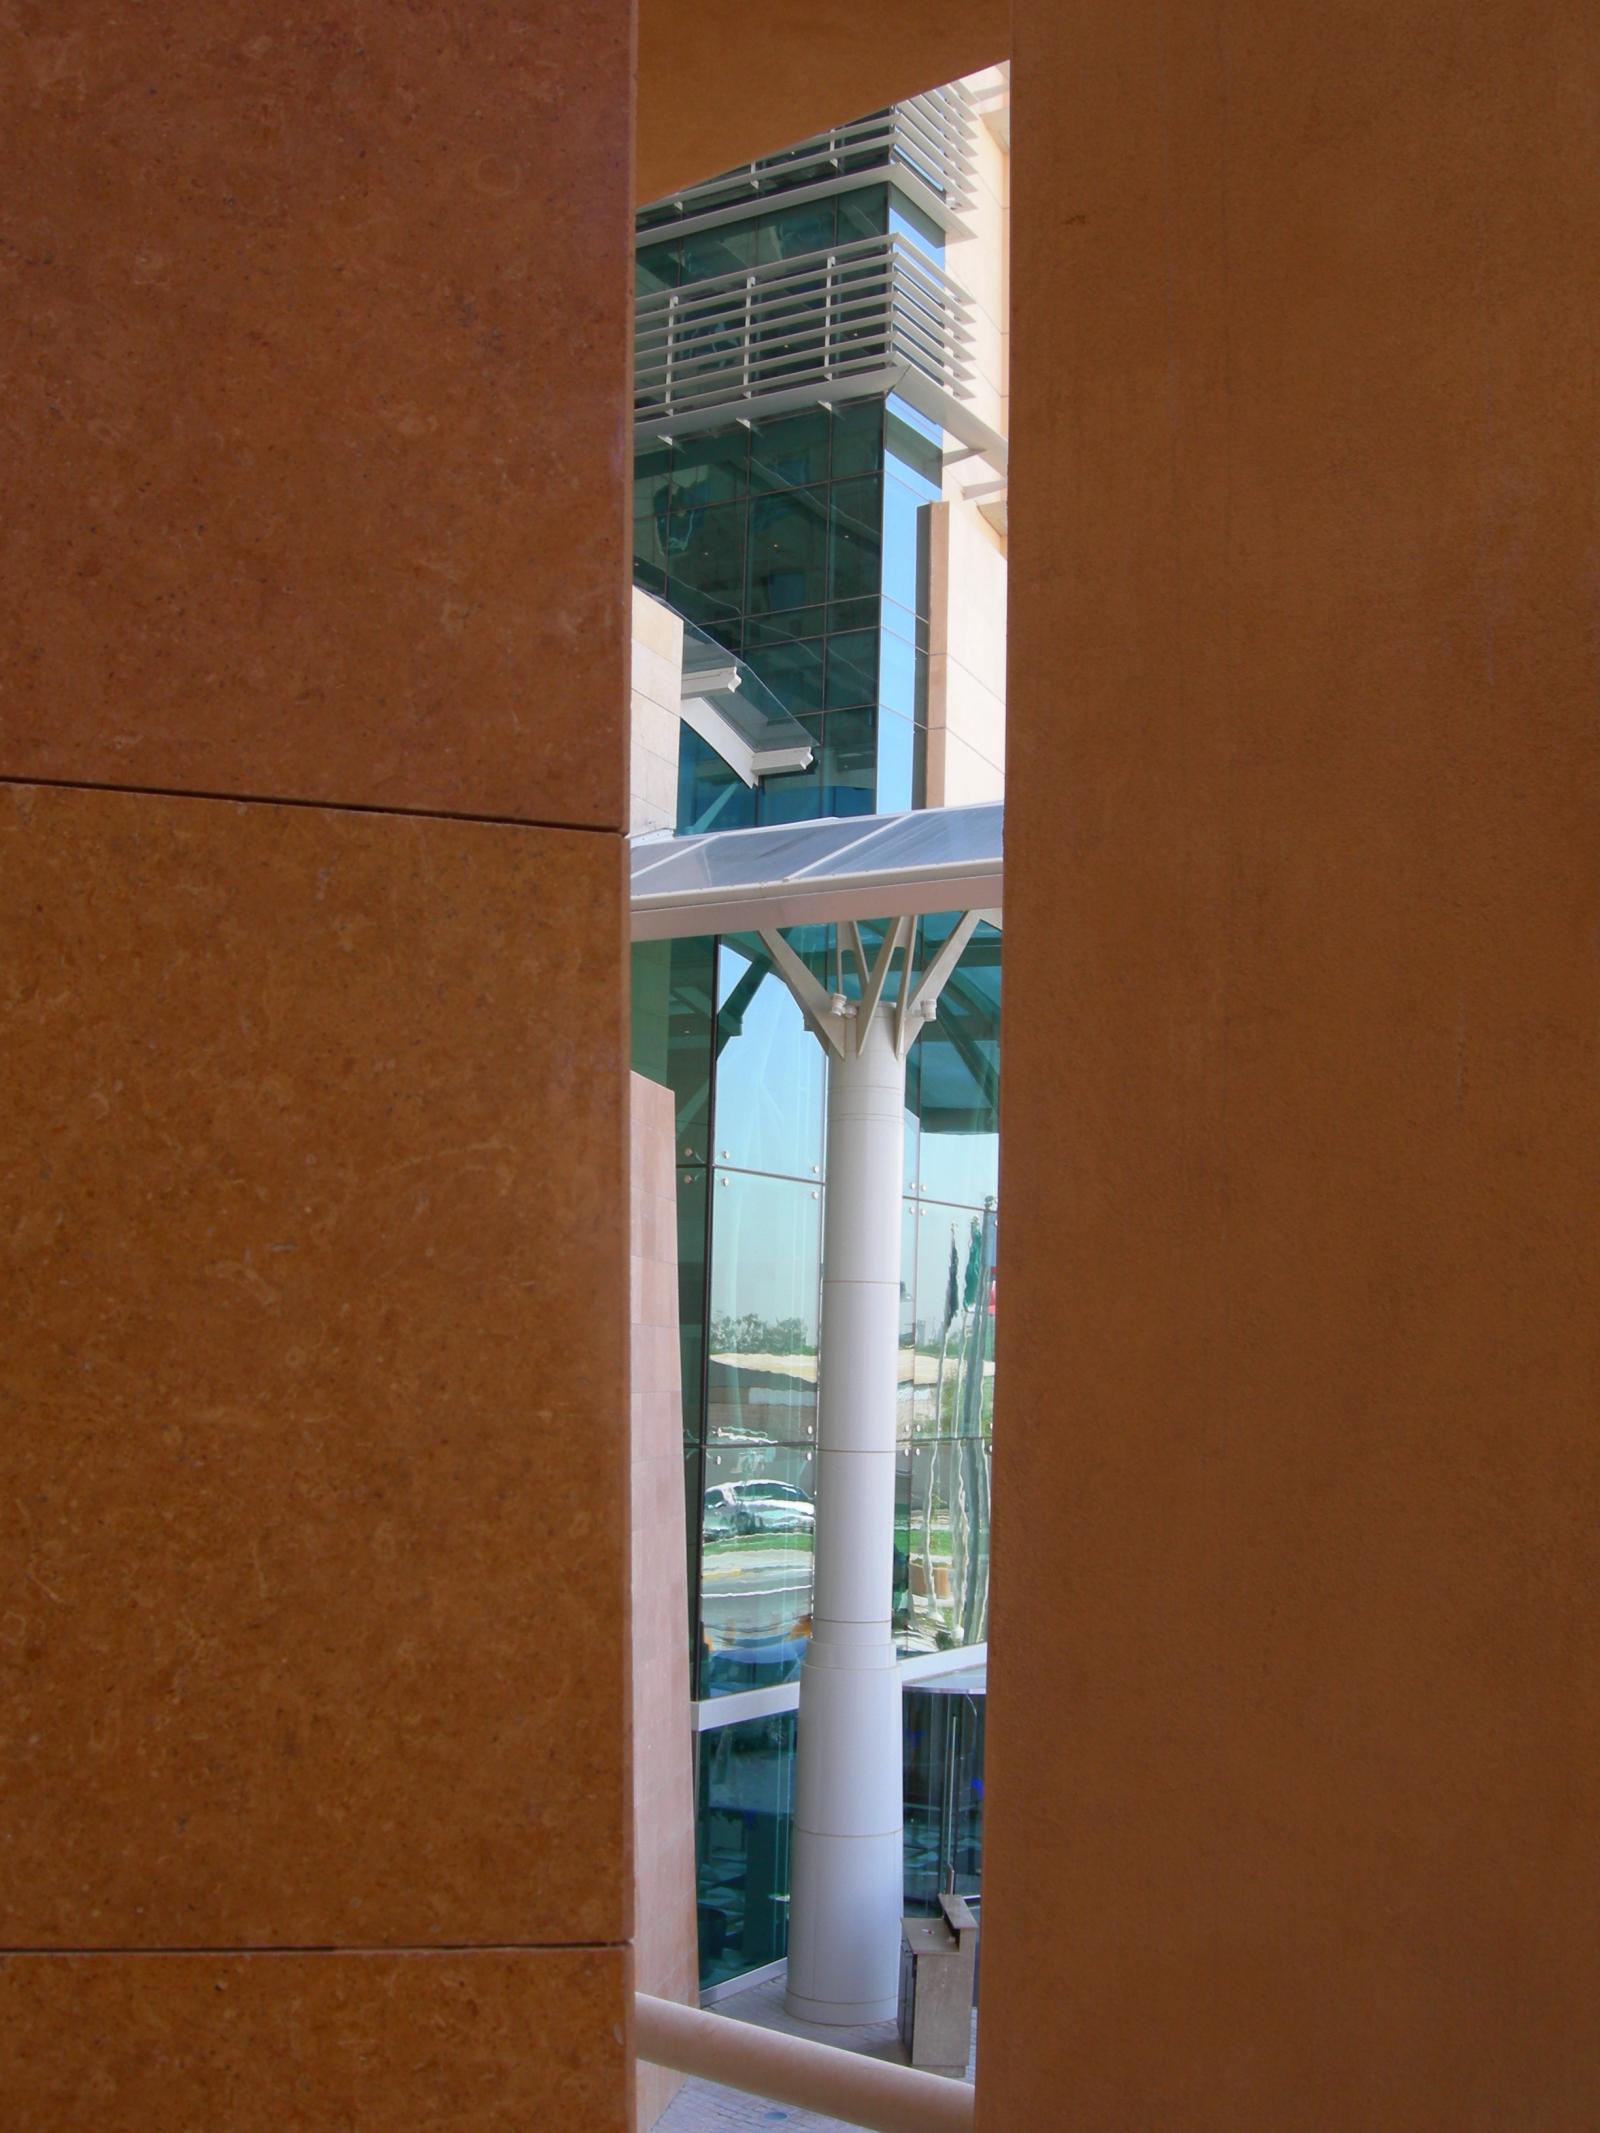 Al-Manshar Rotana Hotel Tower (200 keys)